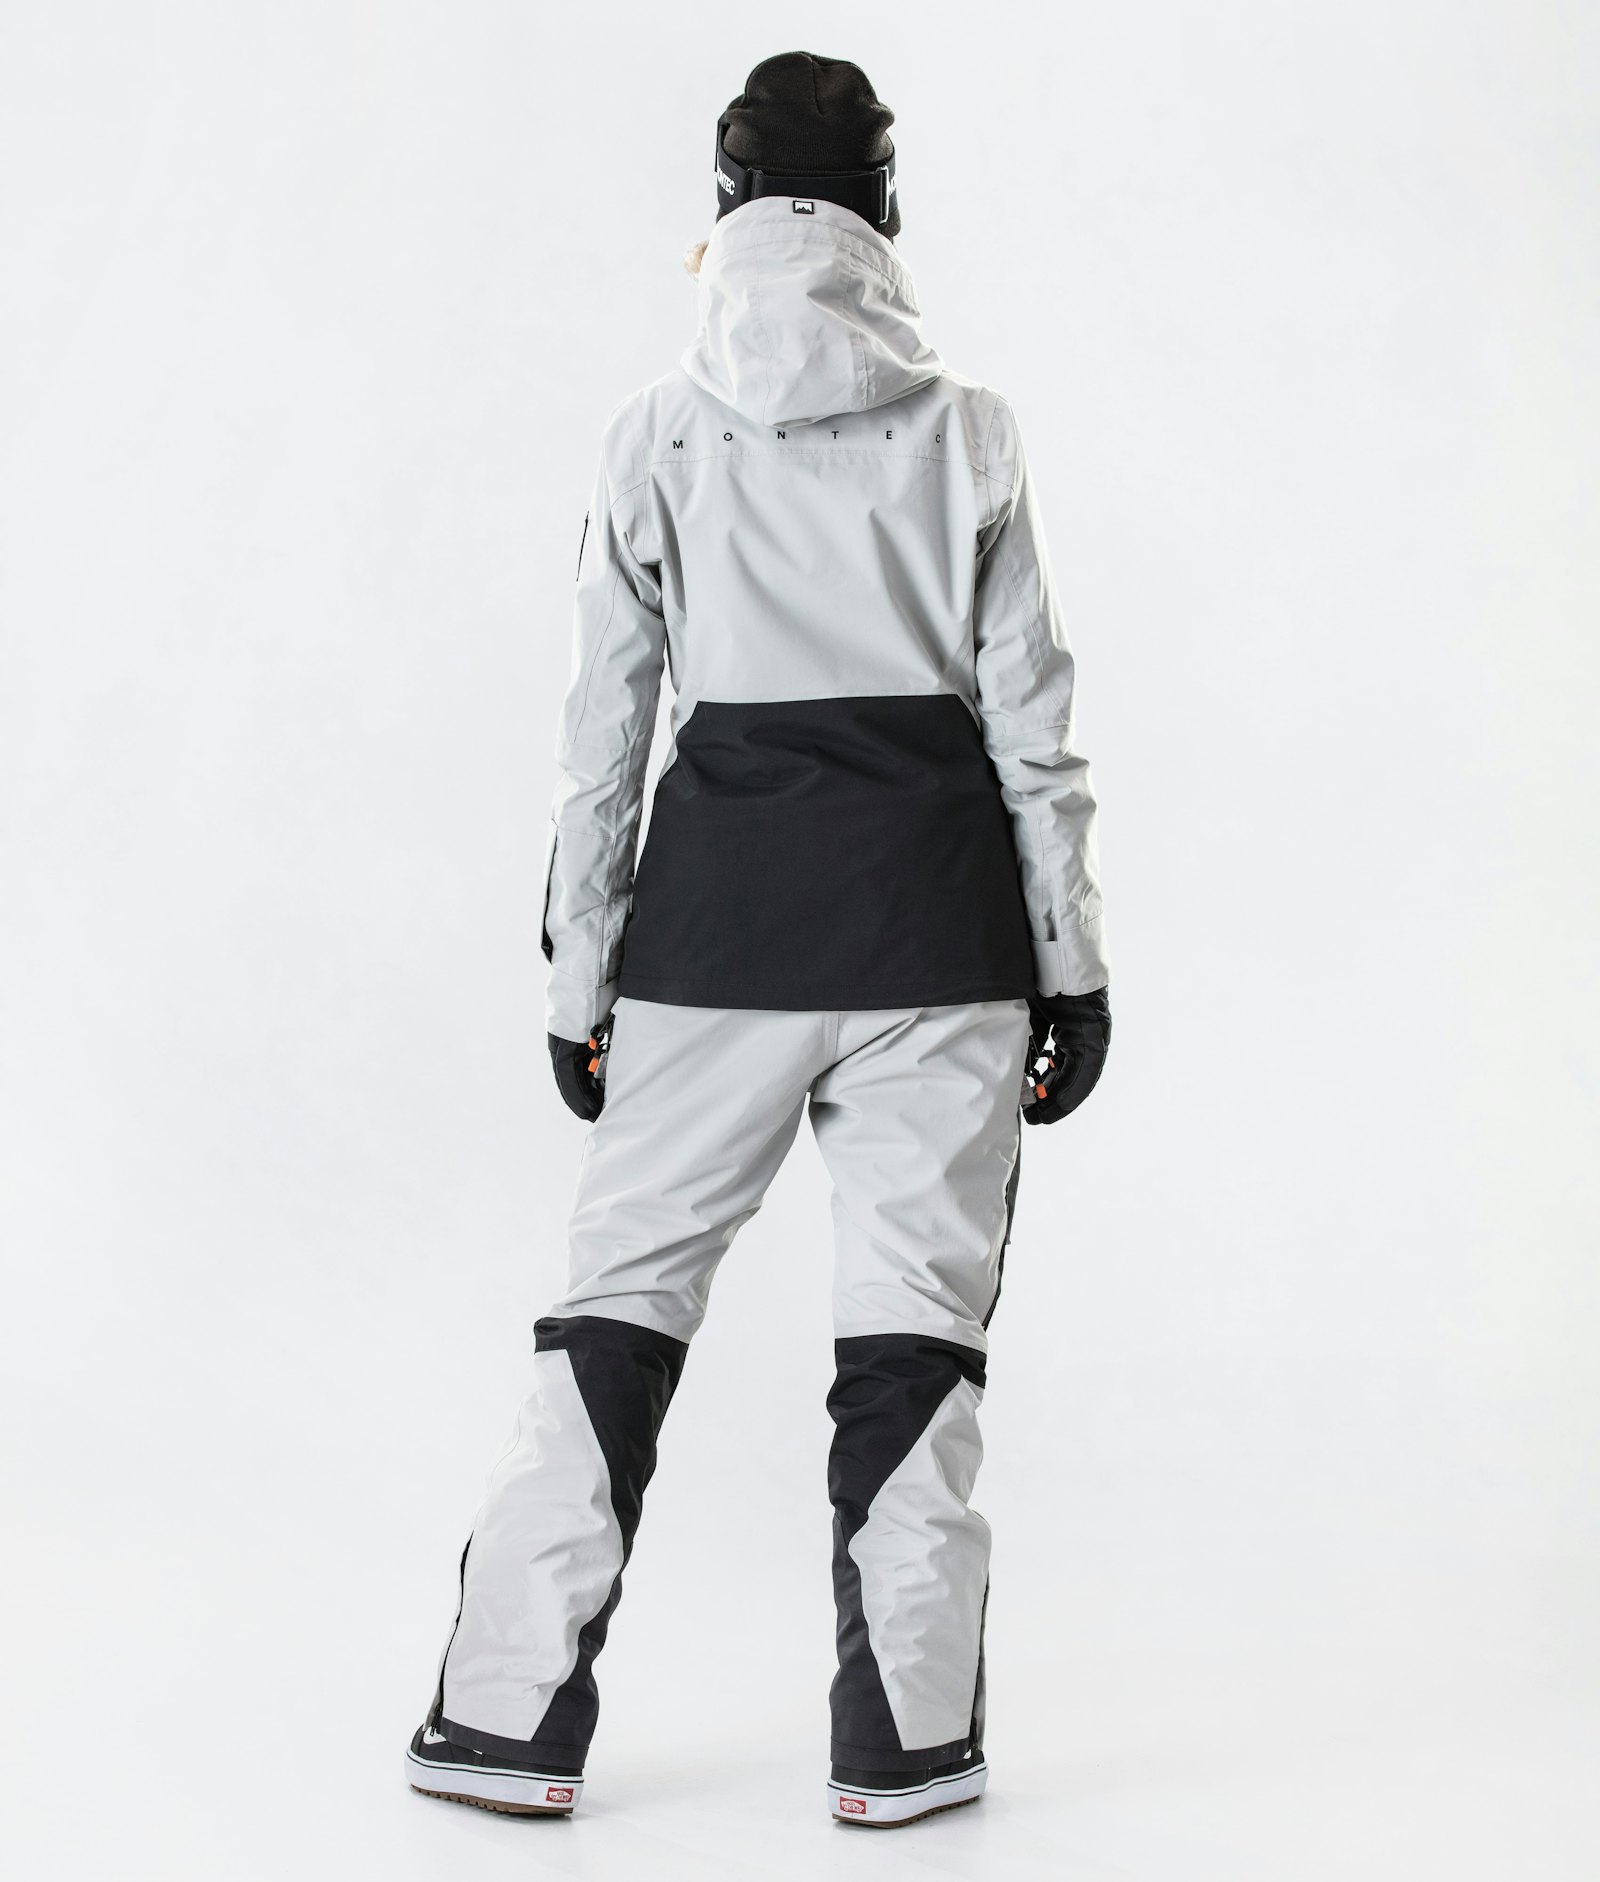 Moss W 2020 Kurtka Snowboardowa Kobiety Light Grey/Black